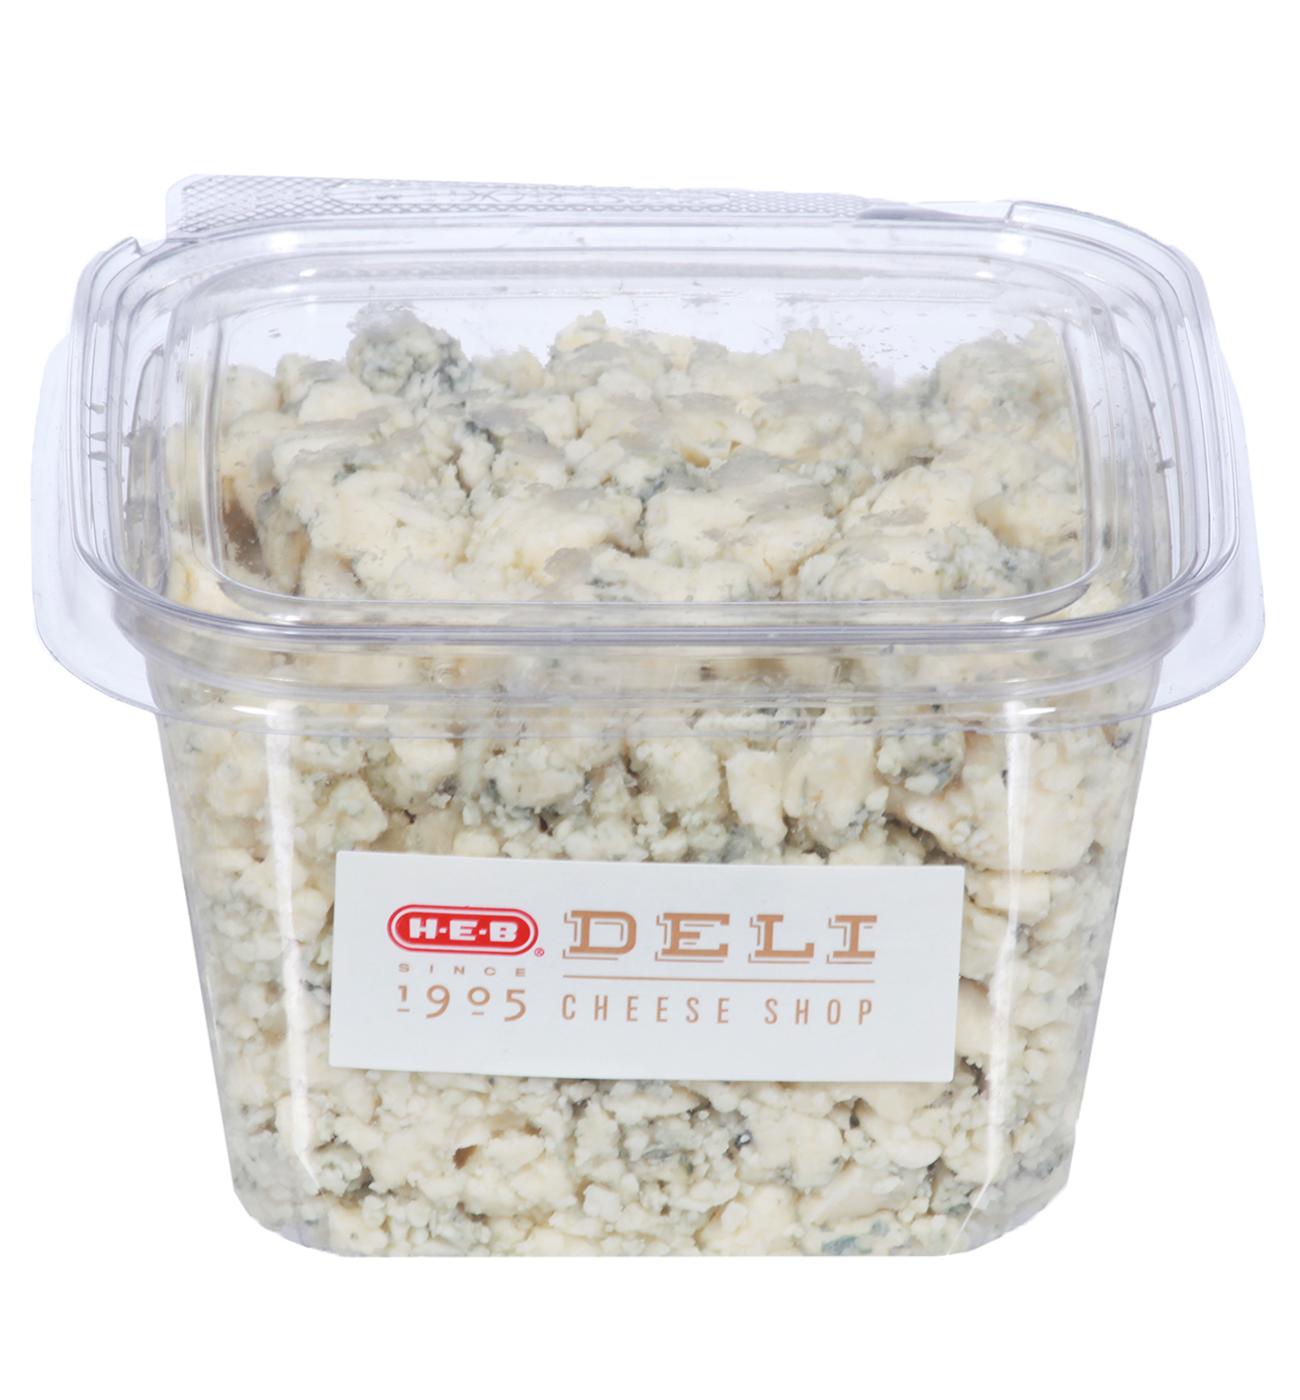 H-E-B Deli Blue Cheese Crumbles; image 1 of 3